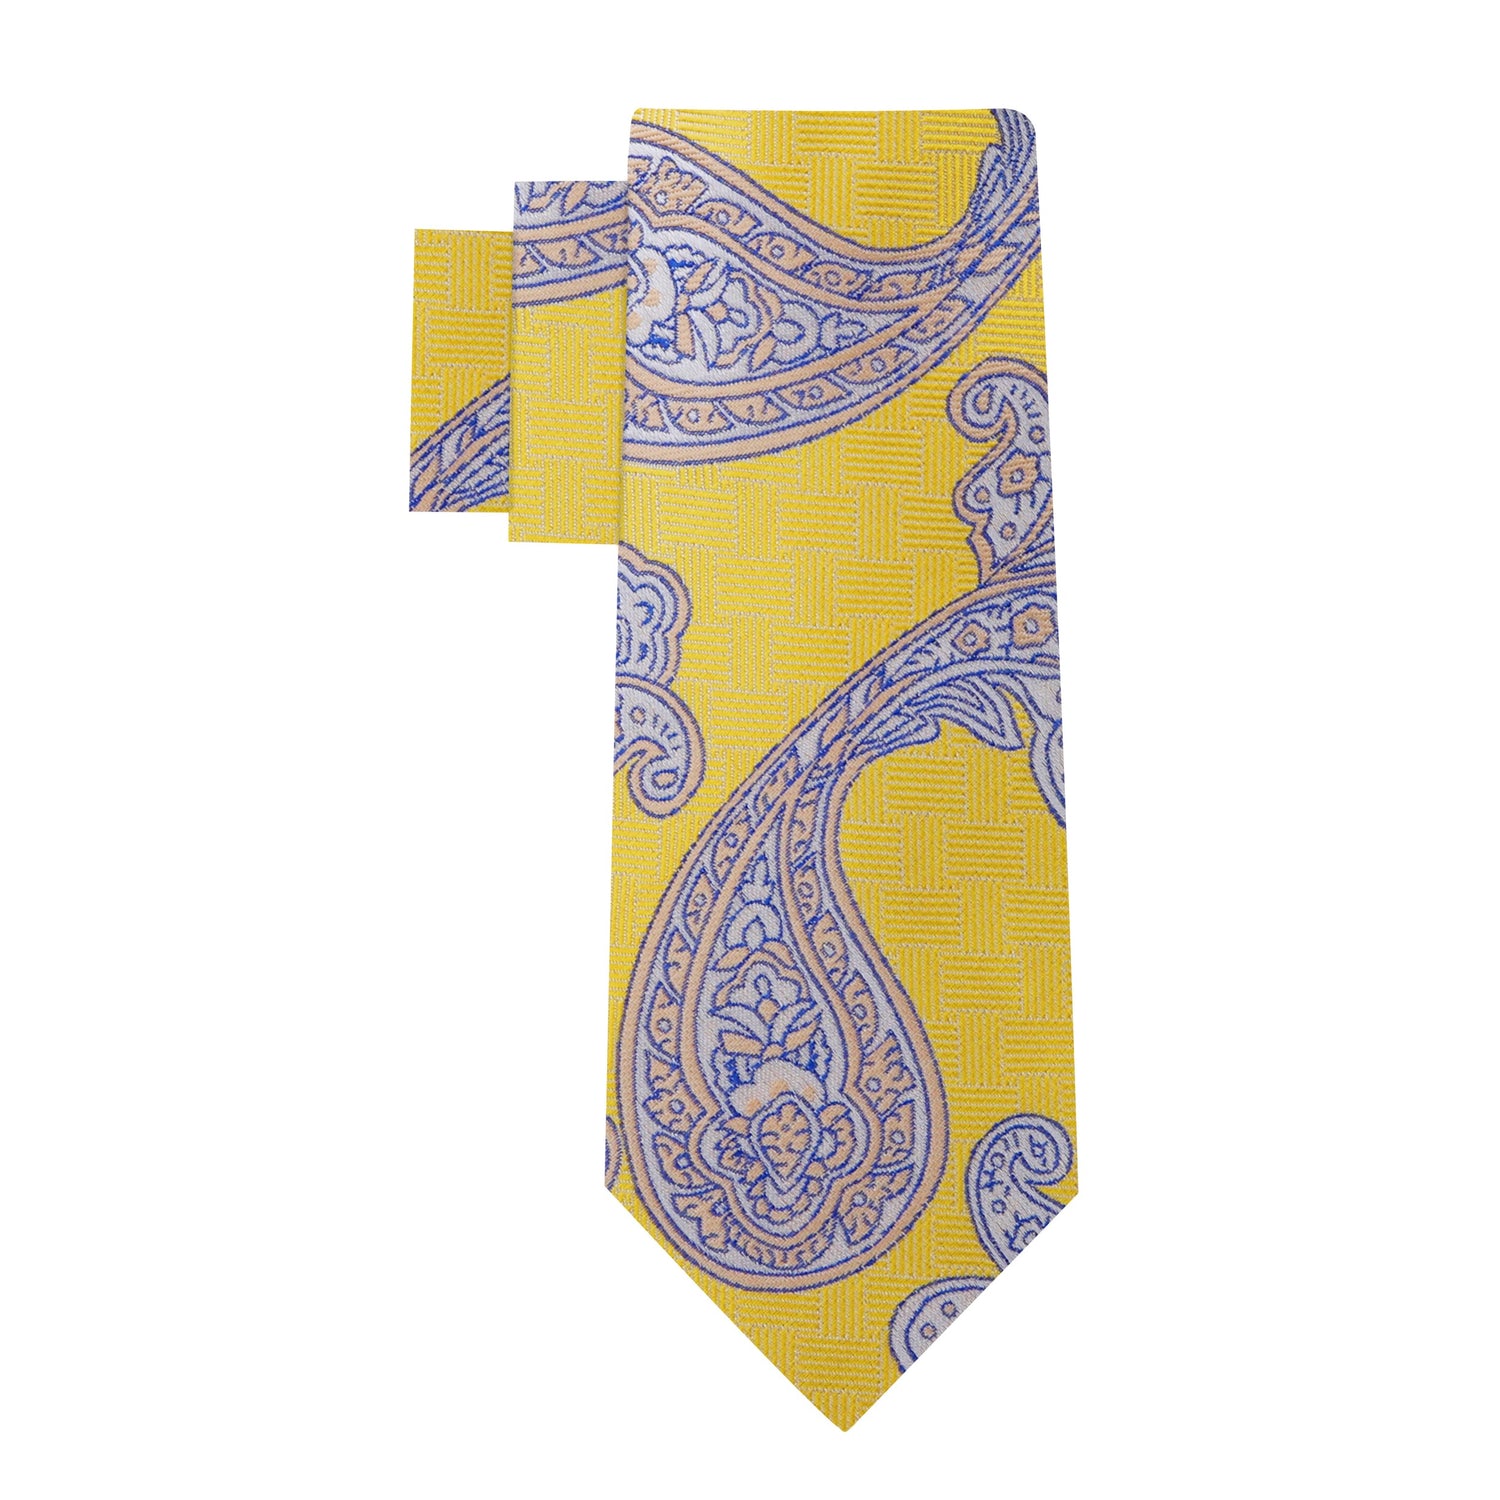 Alt View: Yellow Paisley Necktie